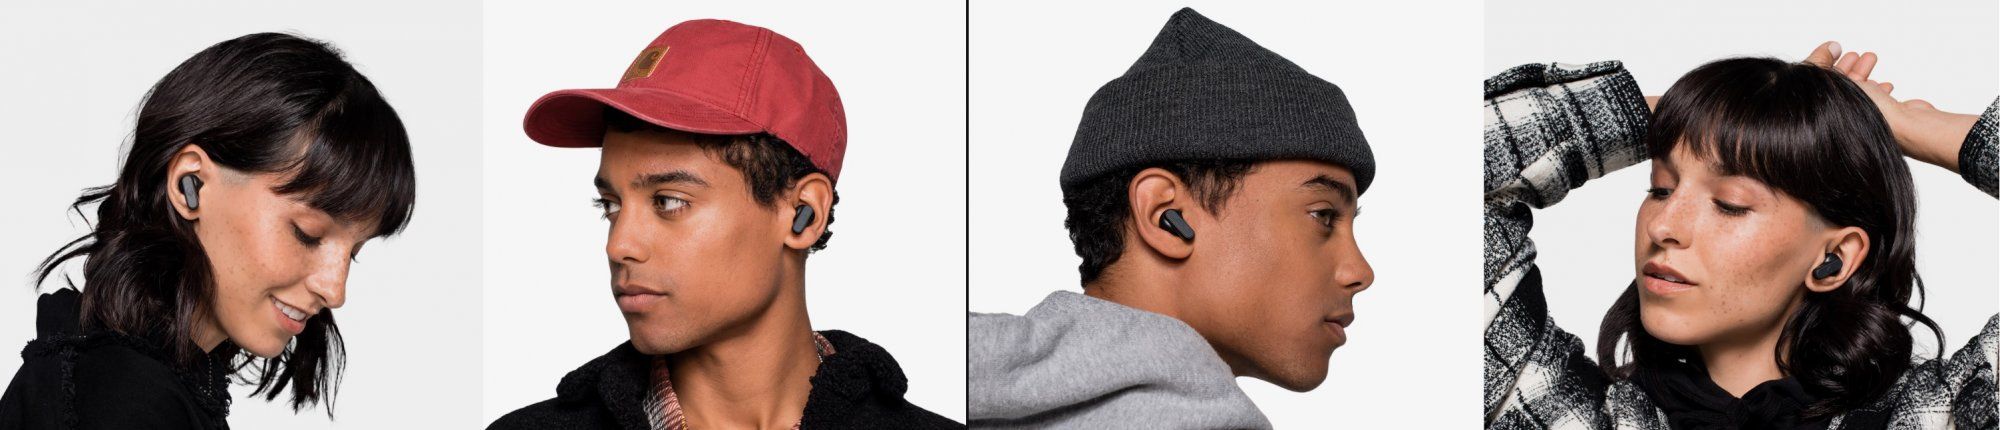  prenosné moderné slúchadlá Skullcandy dime wireless earbuds bluetooth technológia bezdrôtová výdrž 3,5 h na nabitie nabíjací box pre dve plná nabitie handsfree mikrofón solo mode 